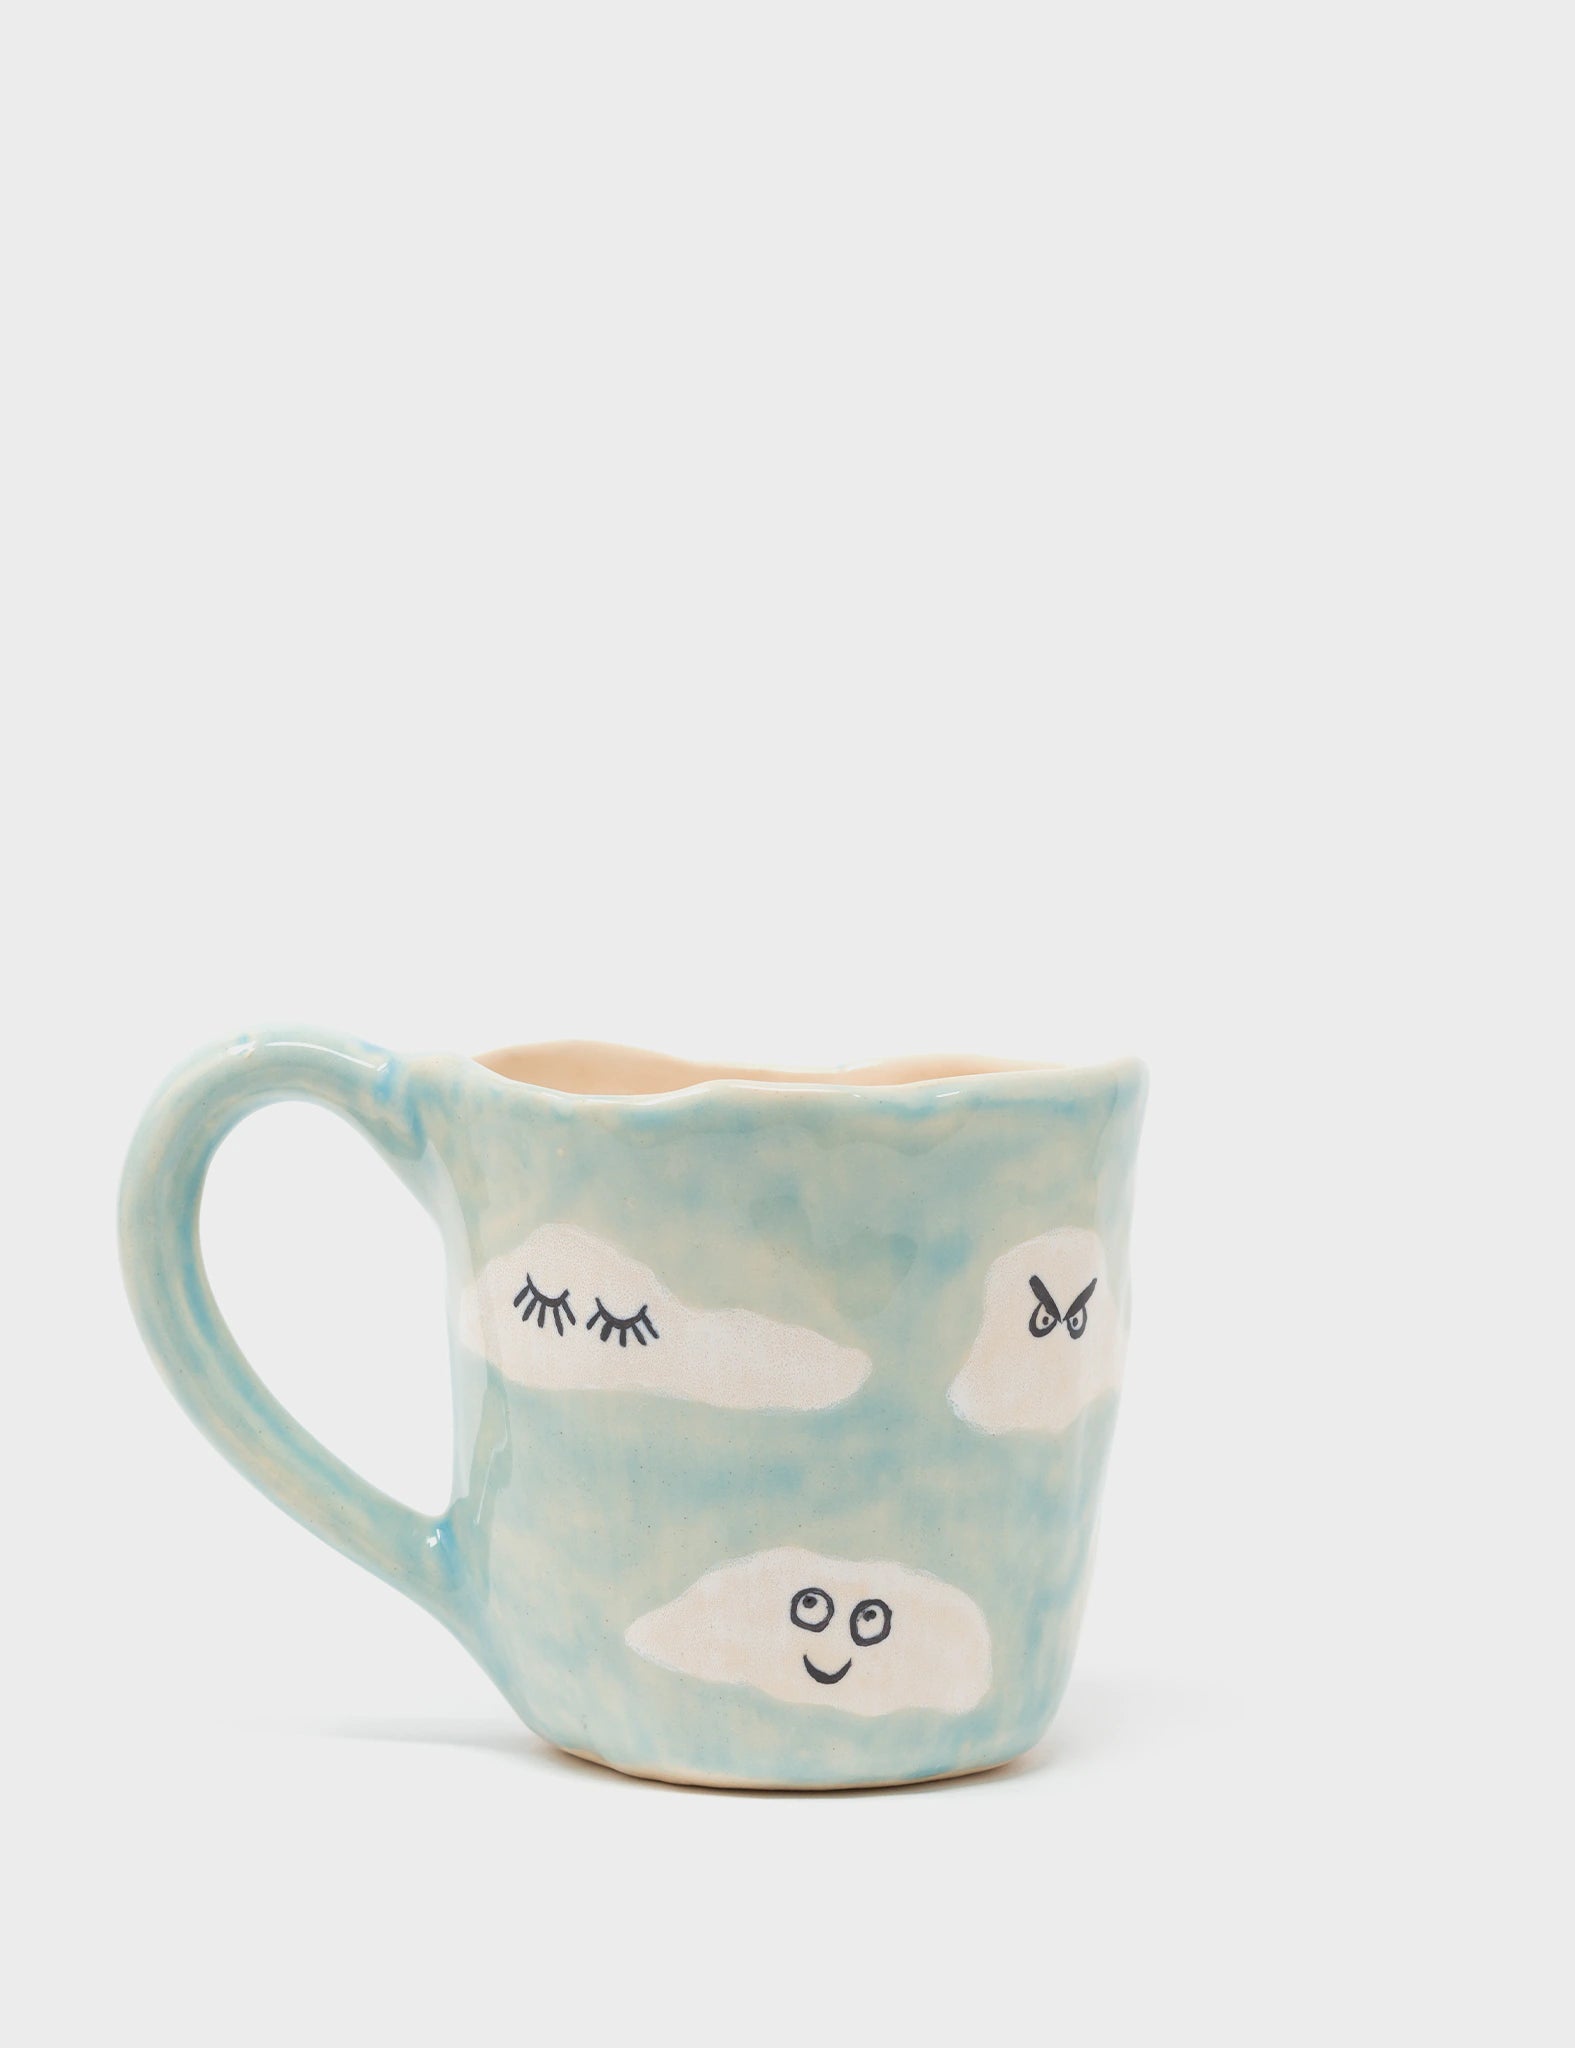 Atmospheric Attitudes - Cuttle Up Ceramic Mug